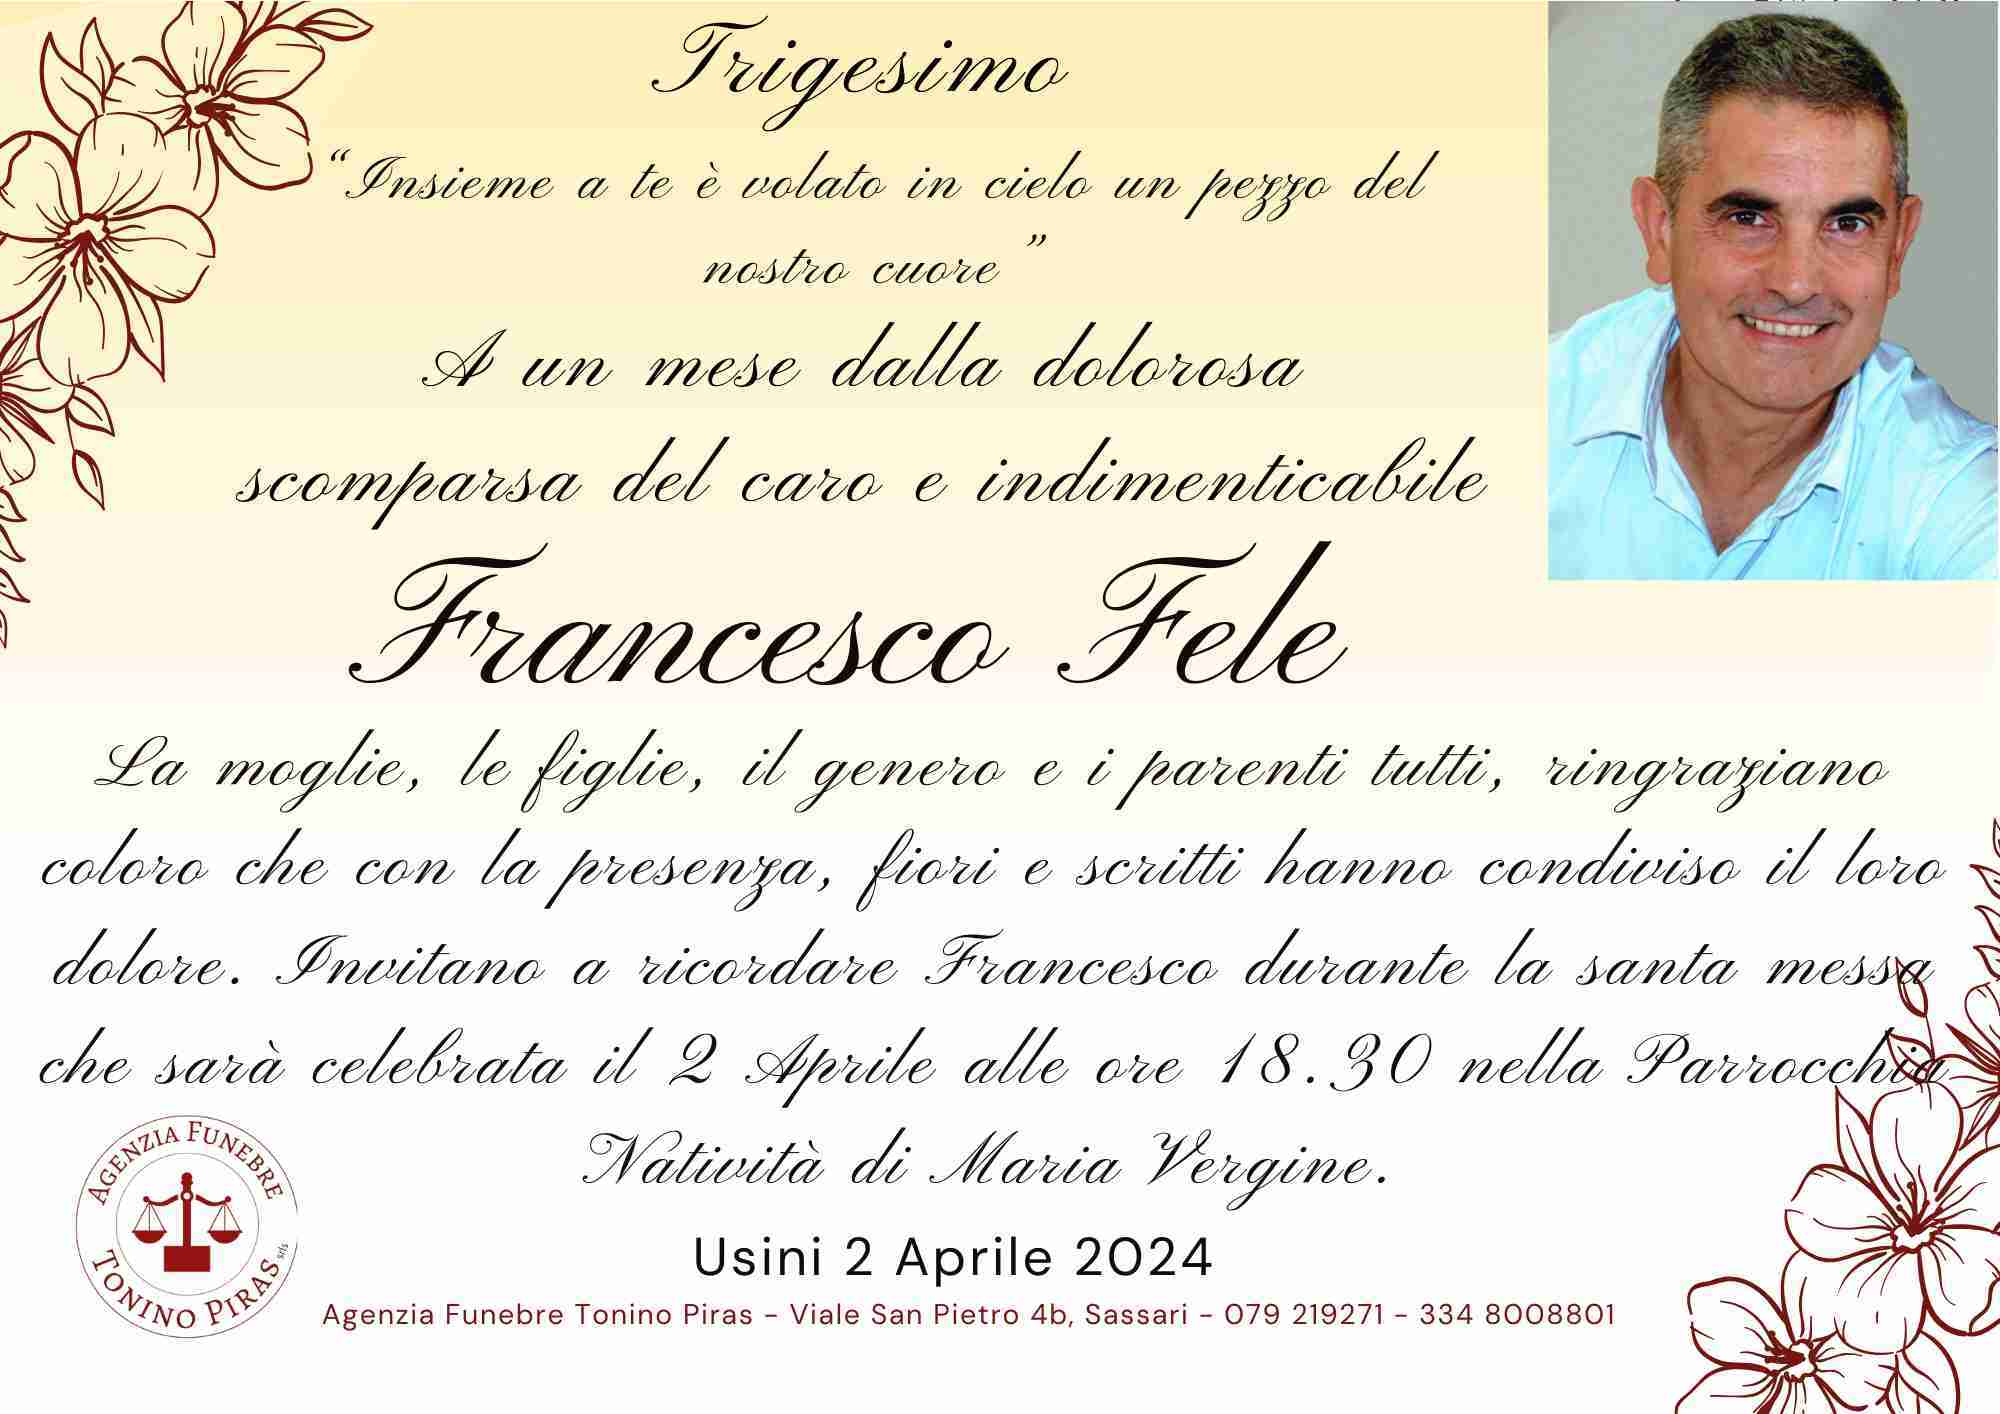 Francesco Fele